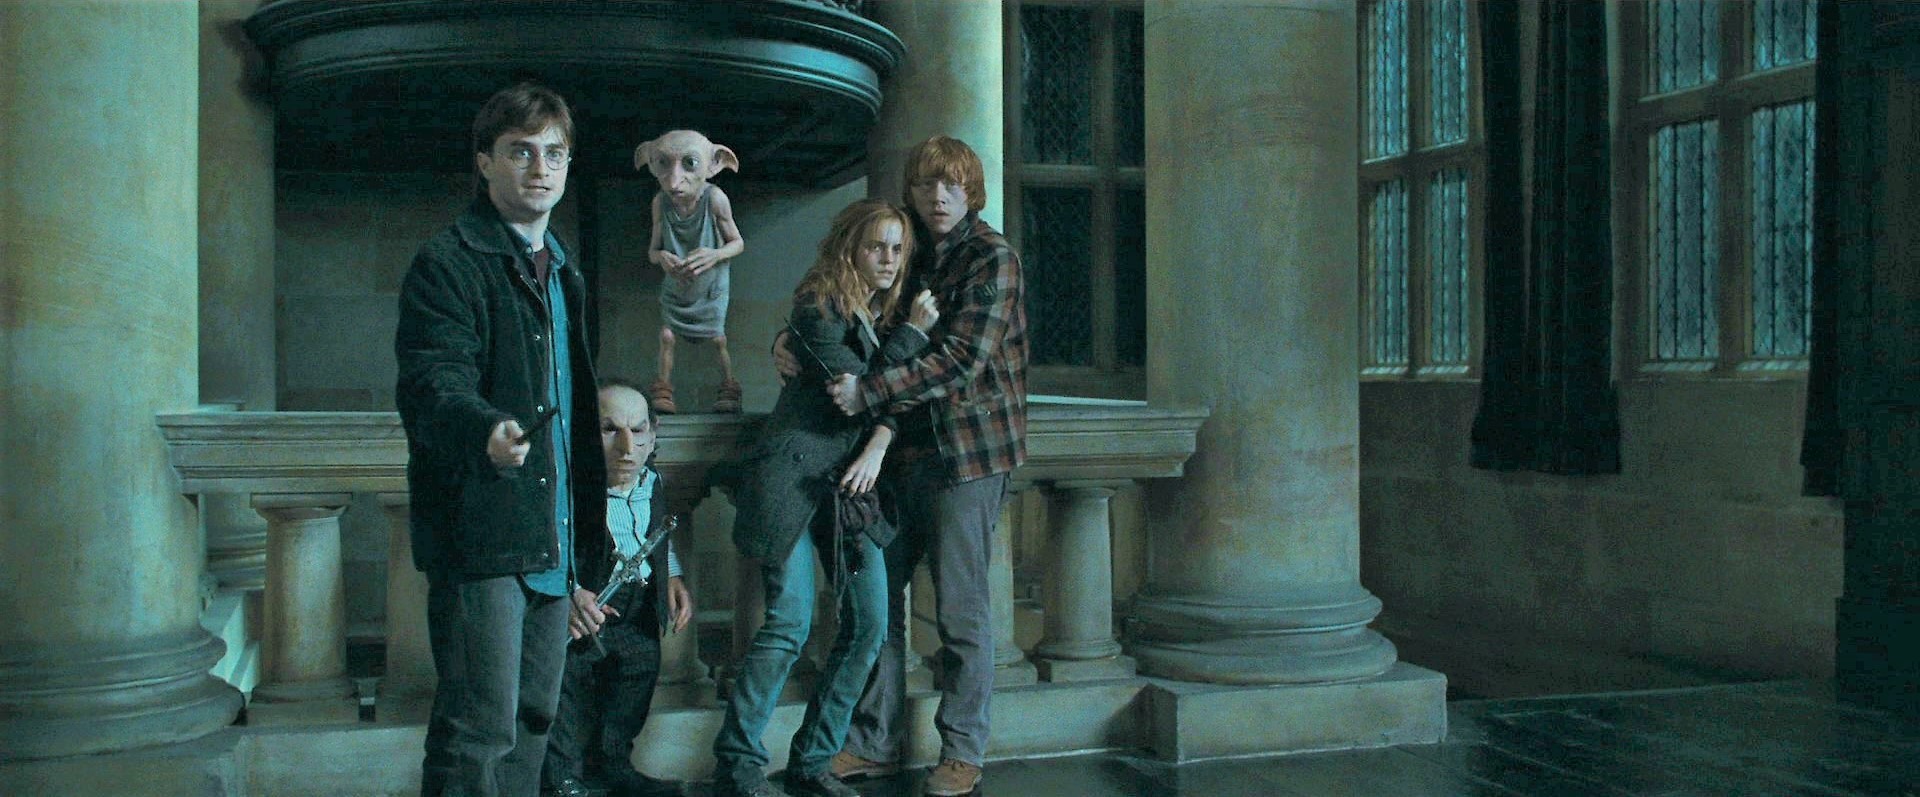 Nossos heróis em cena de Harry Potter e as Relíquias da Morte - Parte 1 (Foto: Divulgação)